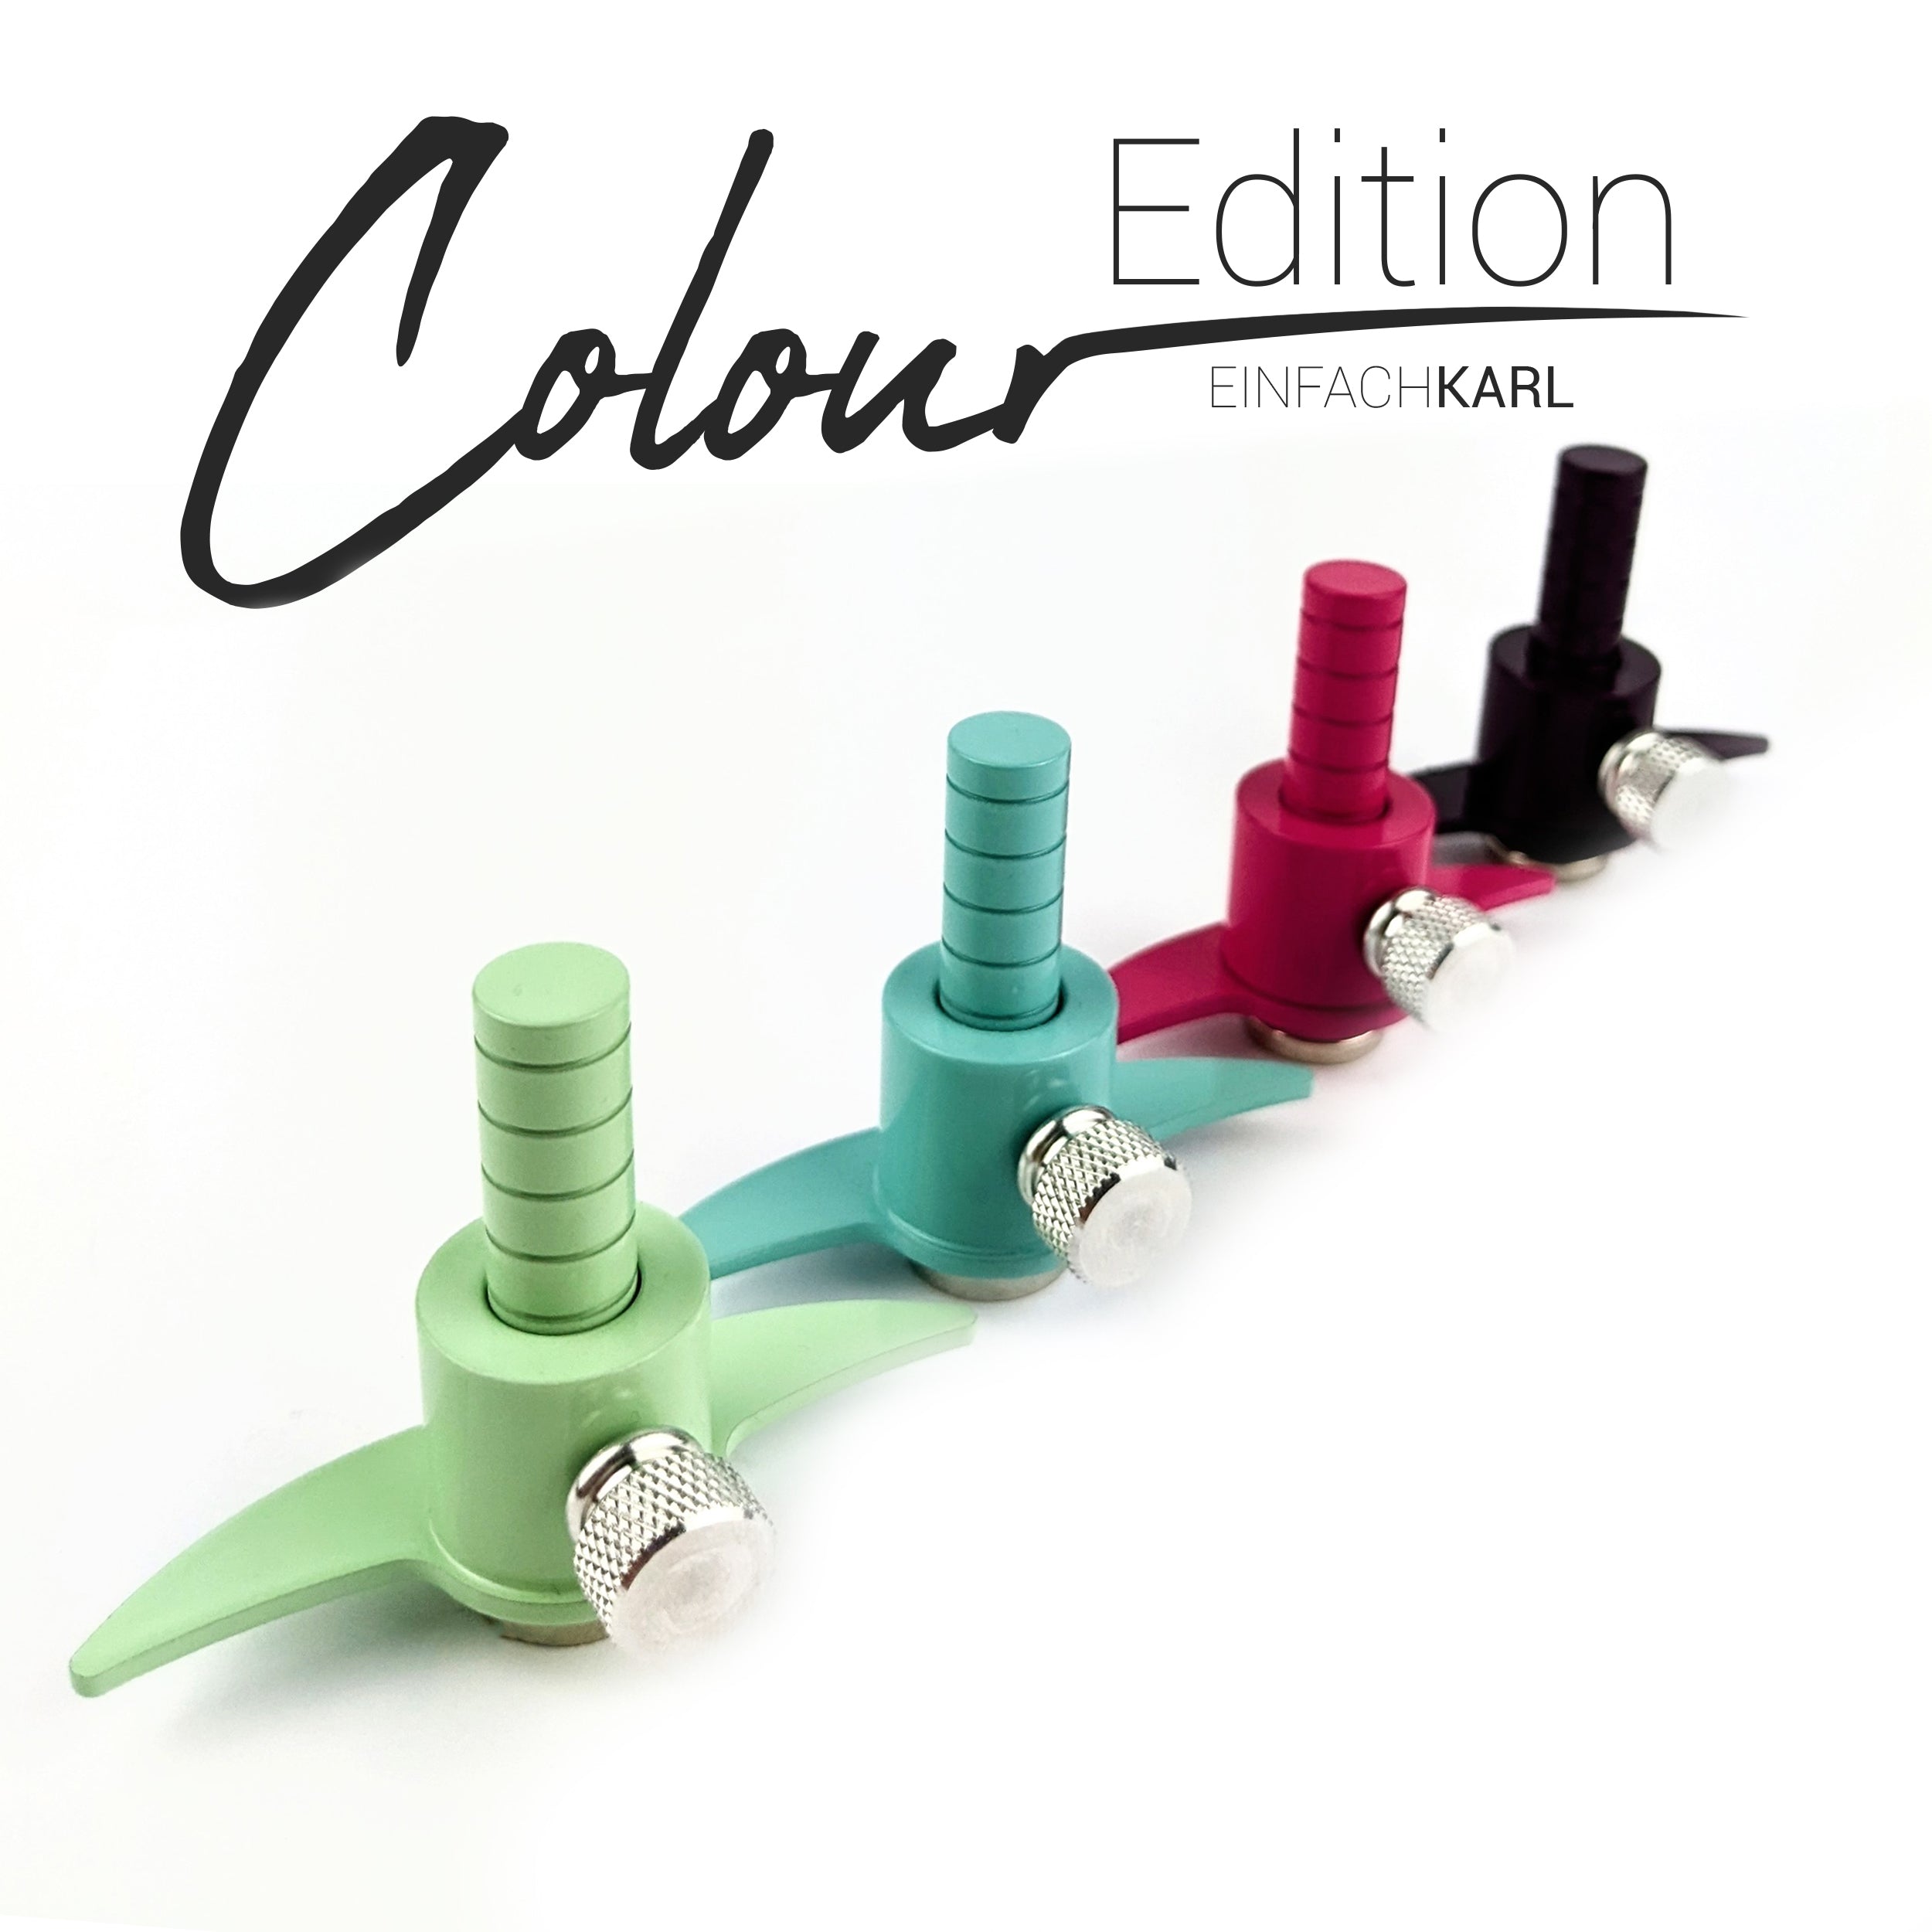 Karlchen (Colour Edition)